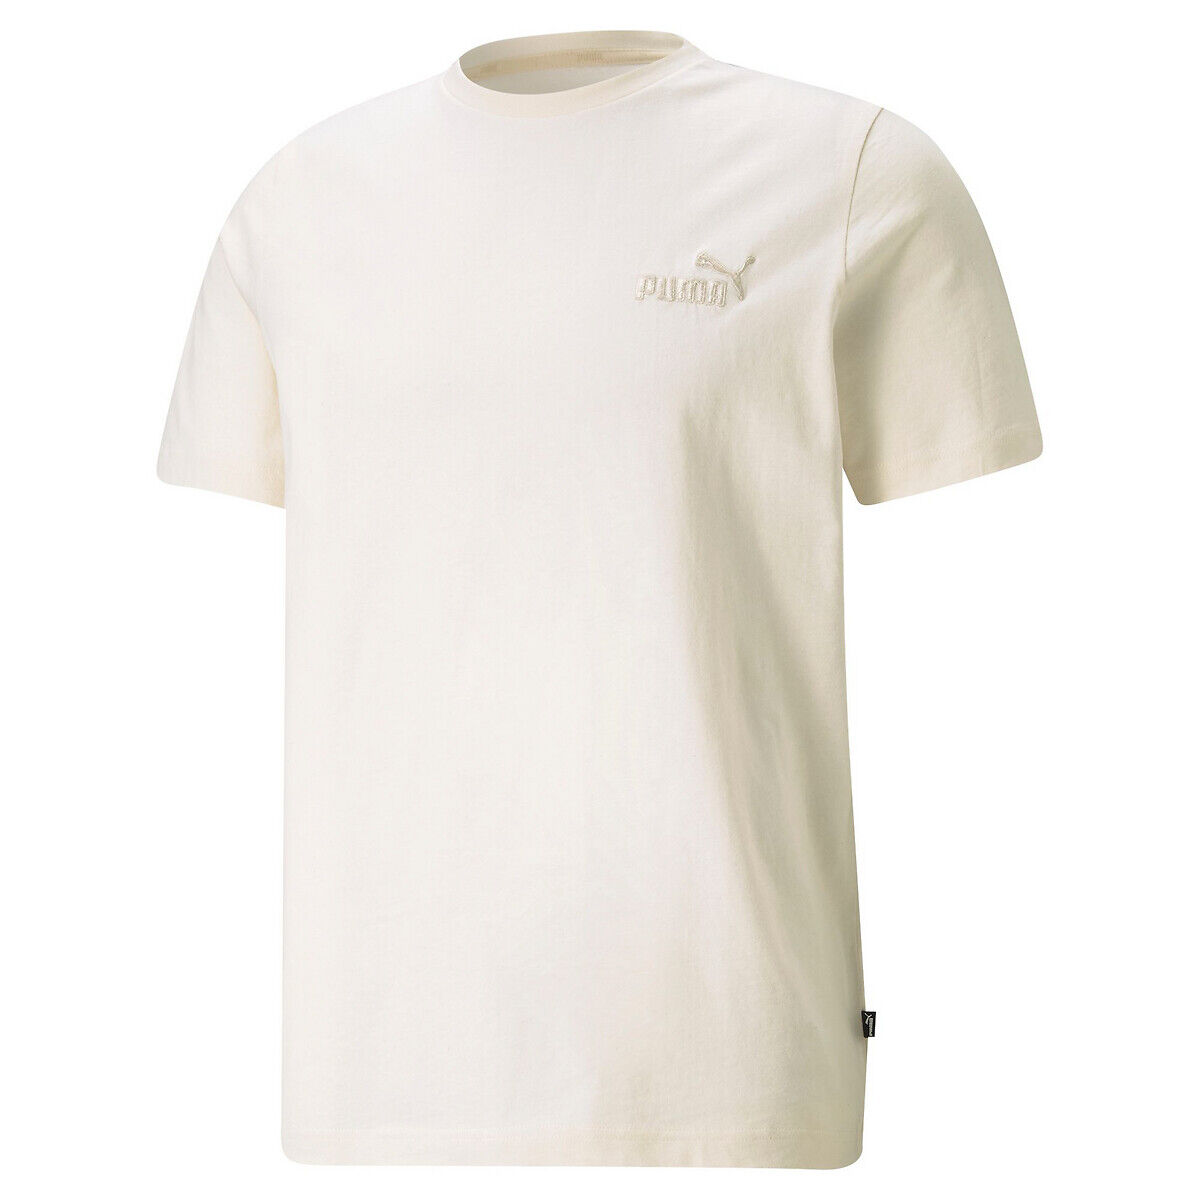 Puma T-shirt de gola redonda   Natural